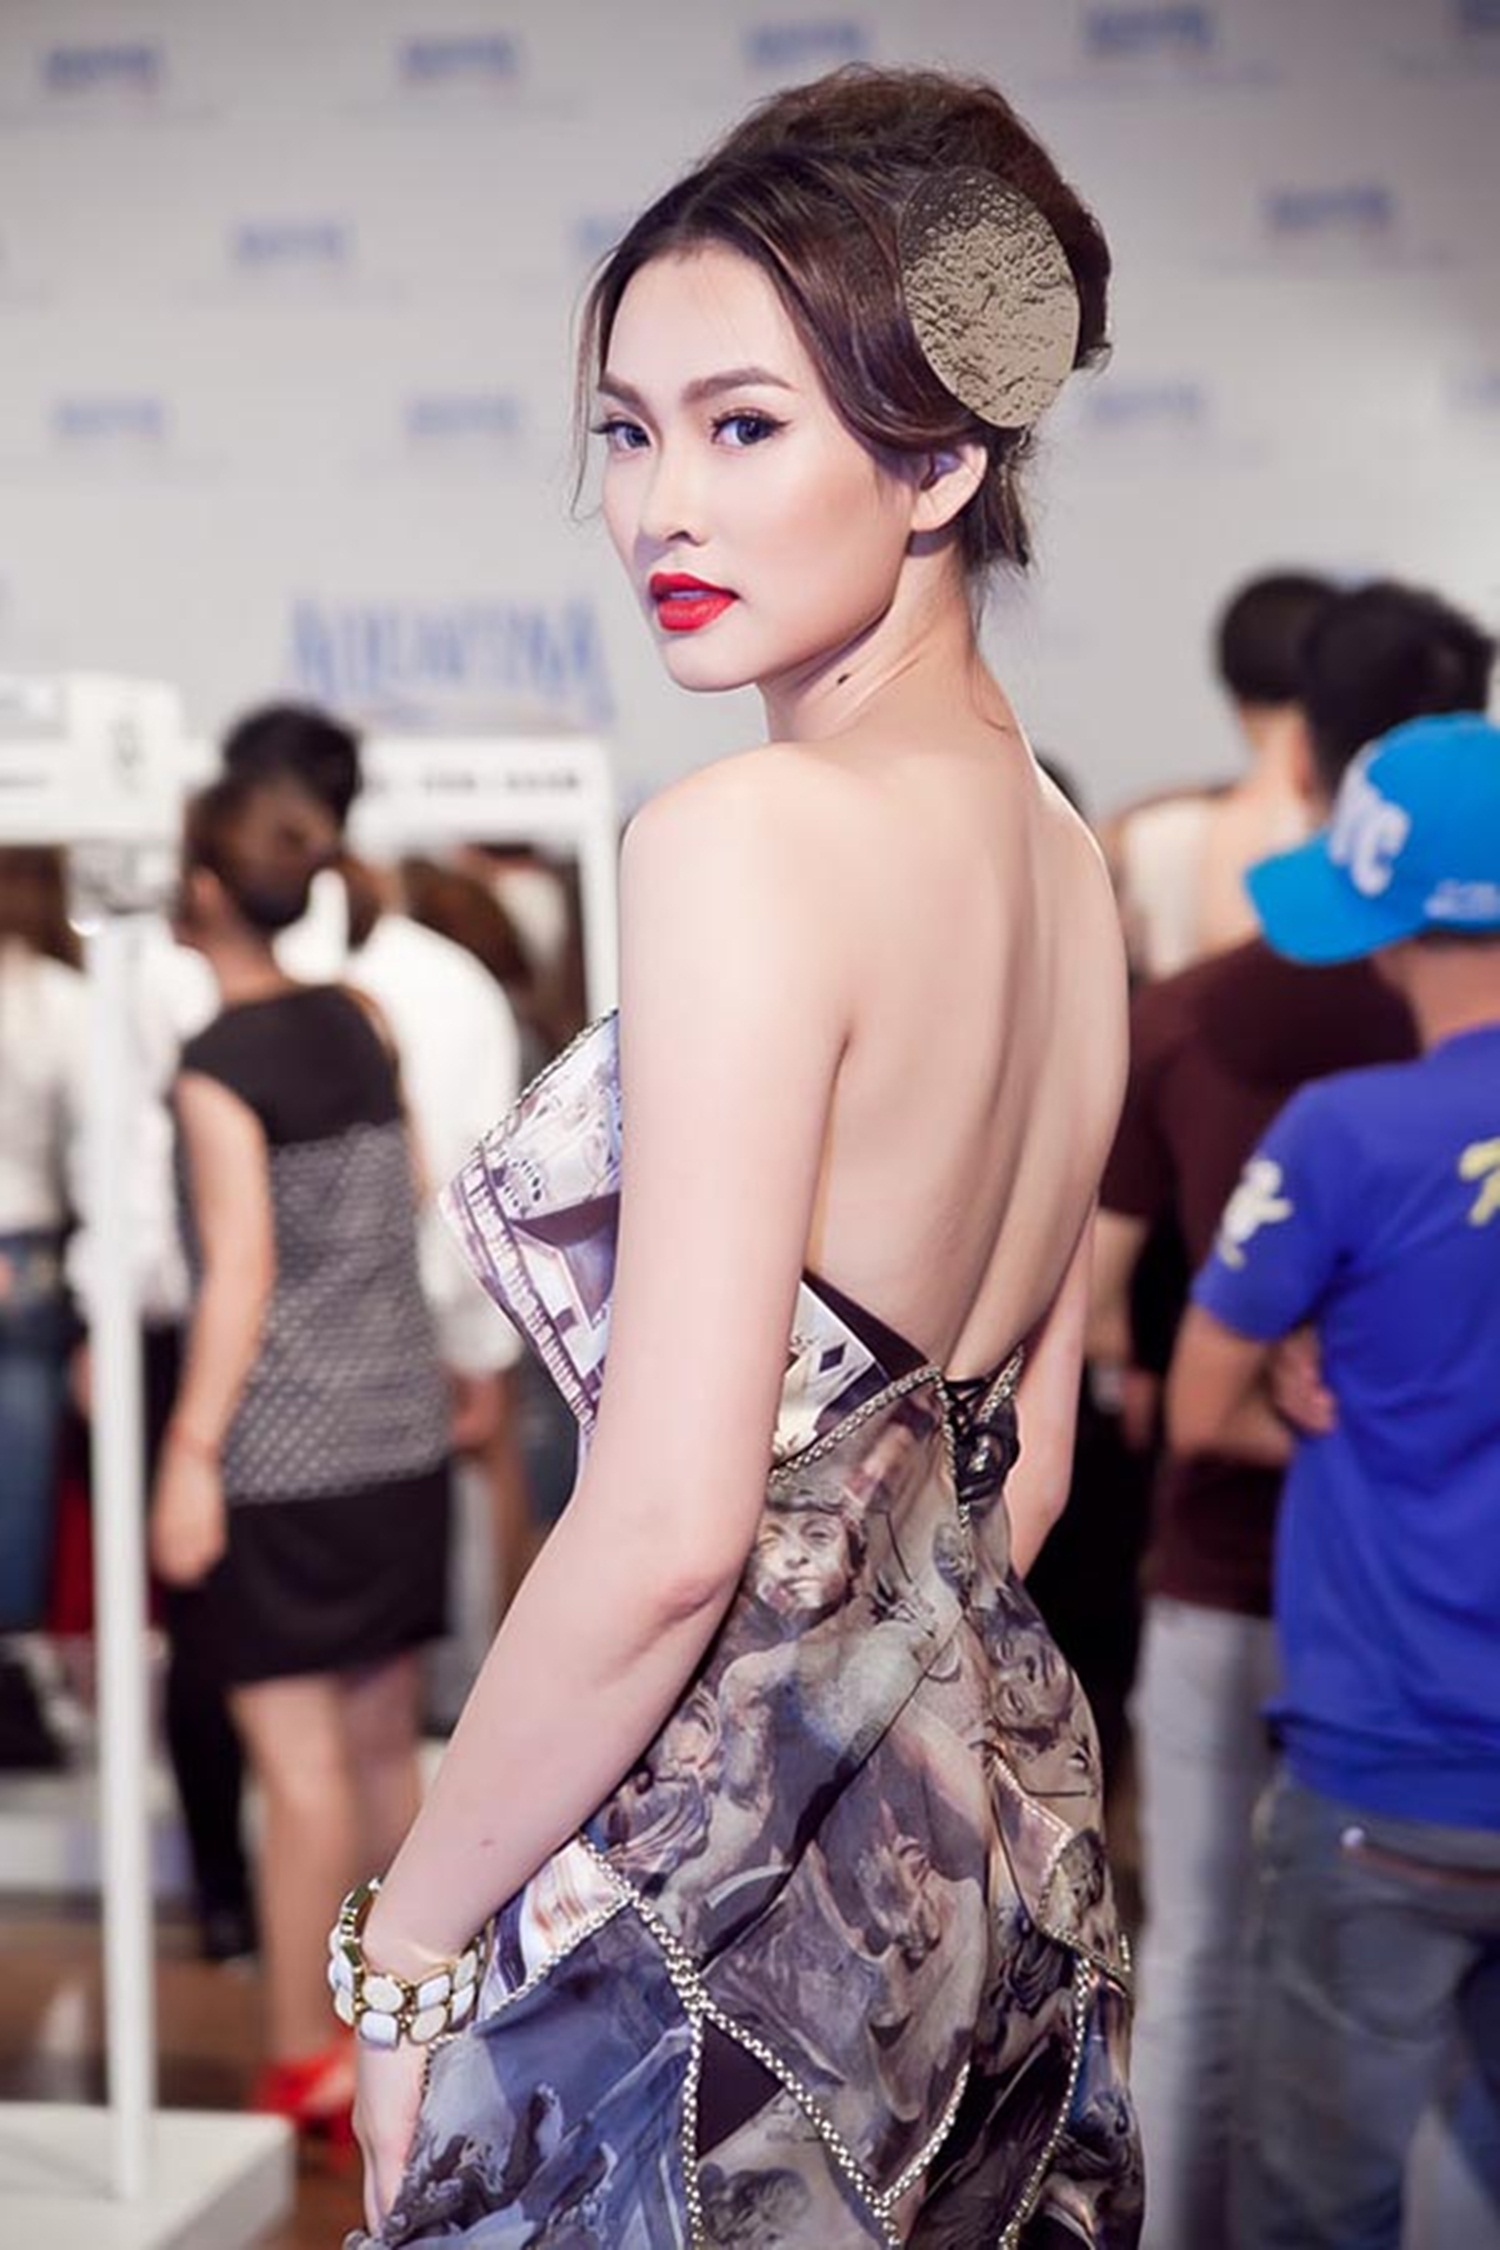 Hiện tại, Vương Thu Phương cũng đã có cuộc sống yên bình hơn sau những ồn ào tại cuộc thi “Hoa hậu Việt Nam 2012”. Cô tập trung kinh doanh và xuất hiện cầm chừng trong vai trò người mẫu.